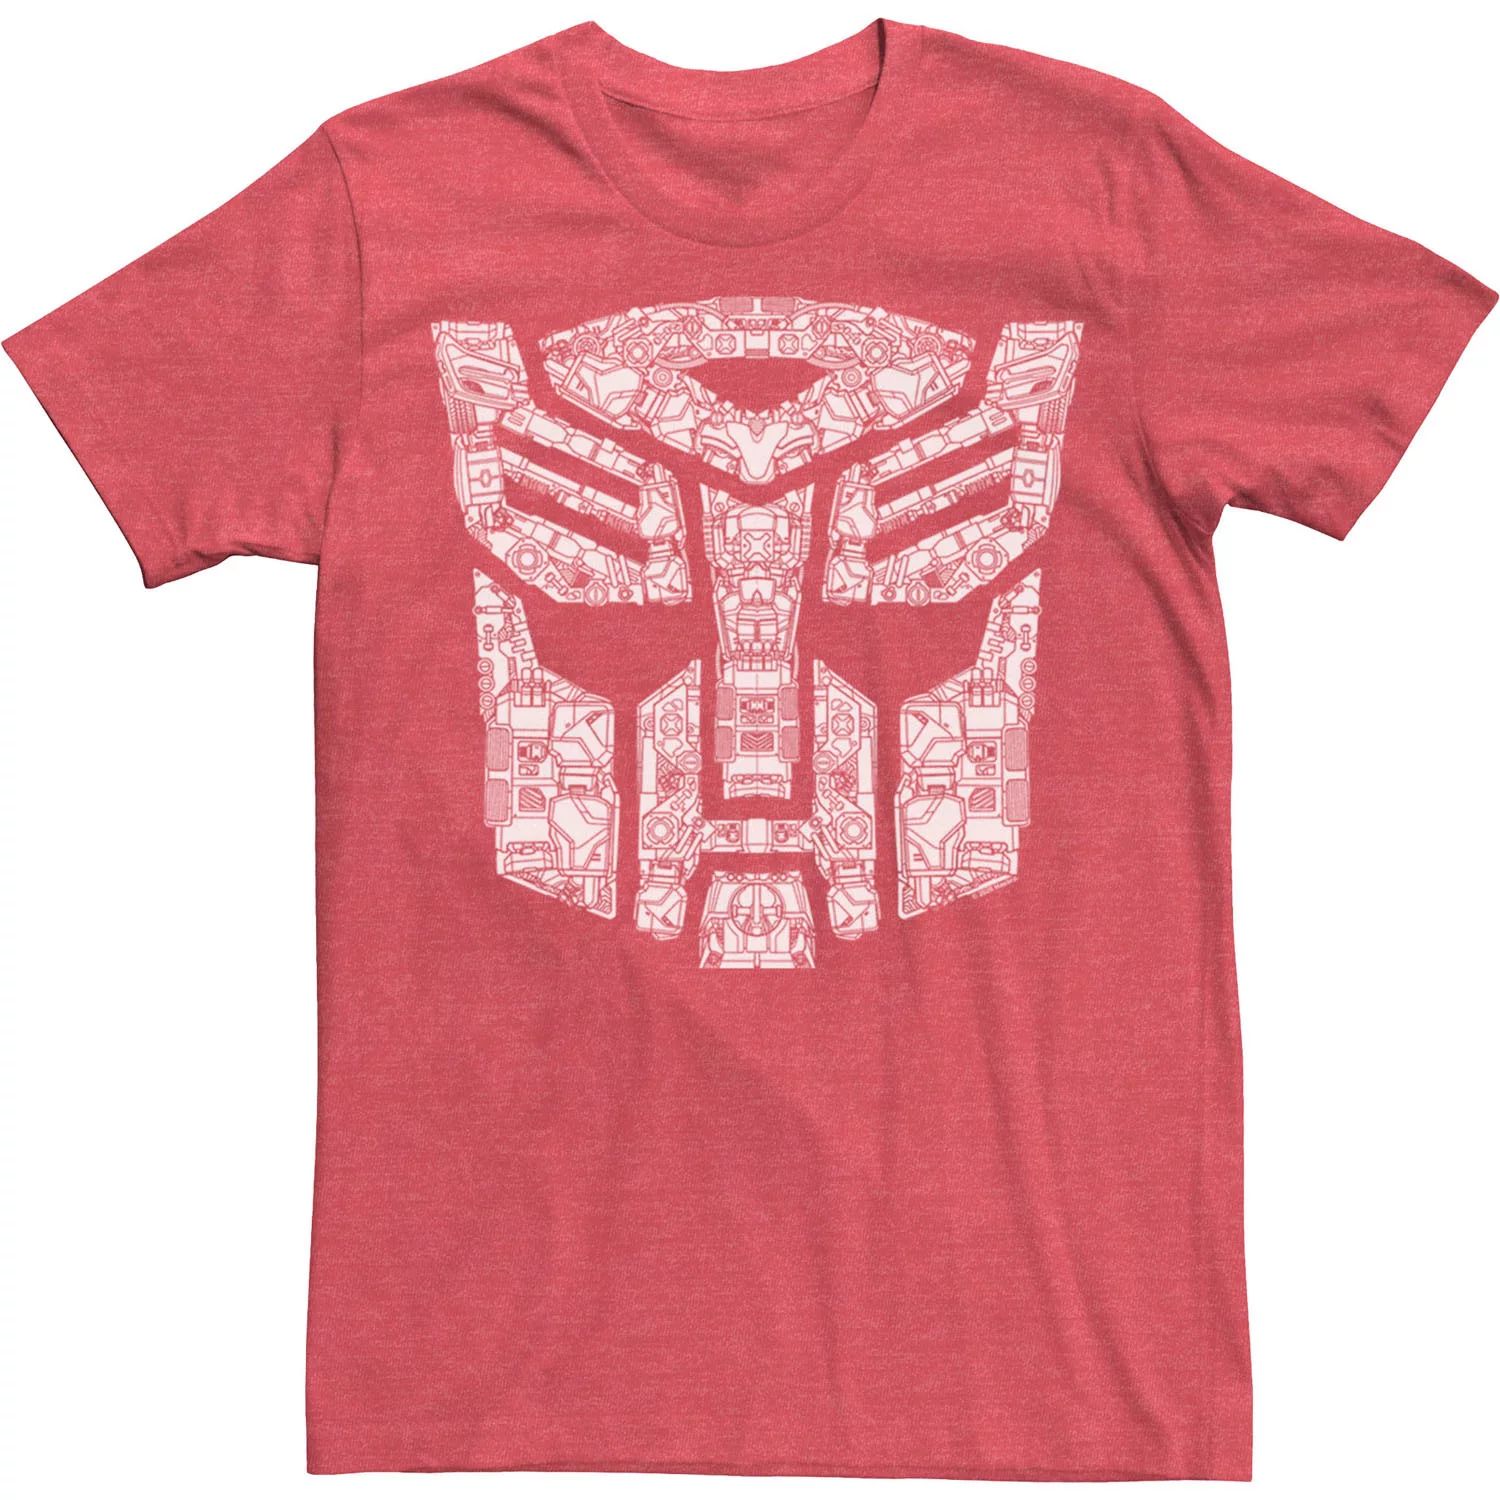 Мужская футболка Transformers Autobots с детальным логотипом Licensed Character